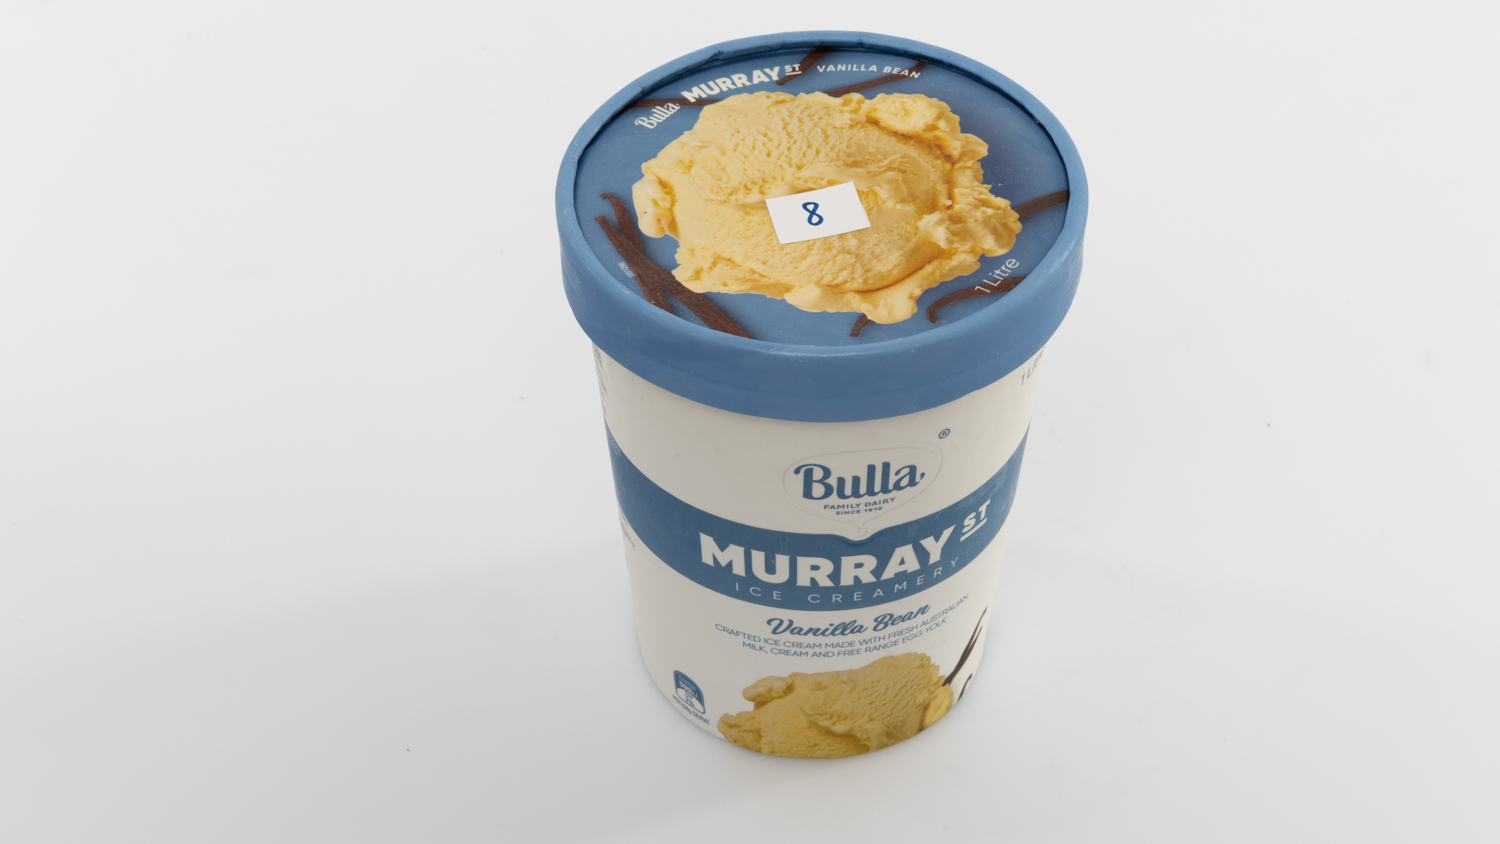 Bulla Murray St Ice Creamery Vanilla Bean Ice Cream carousel image